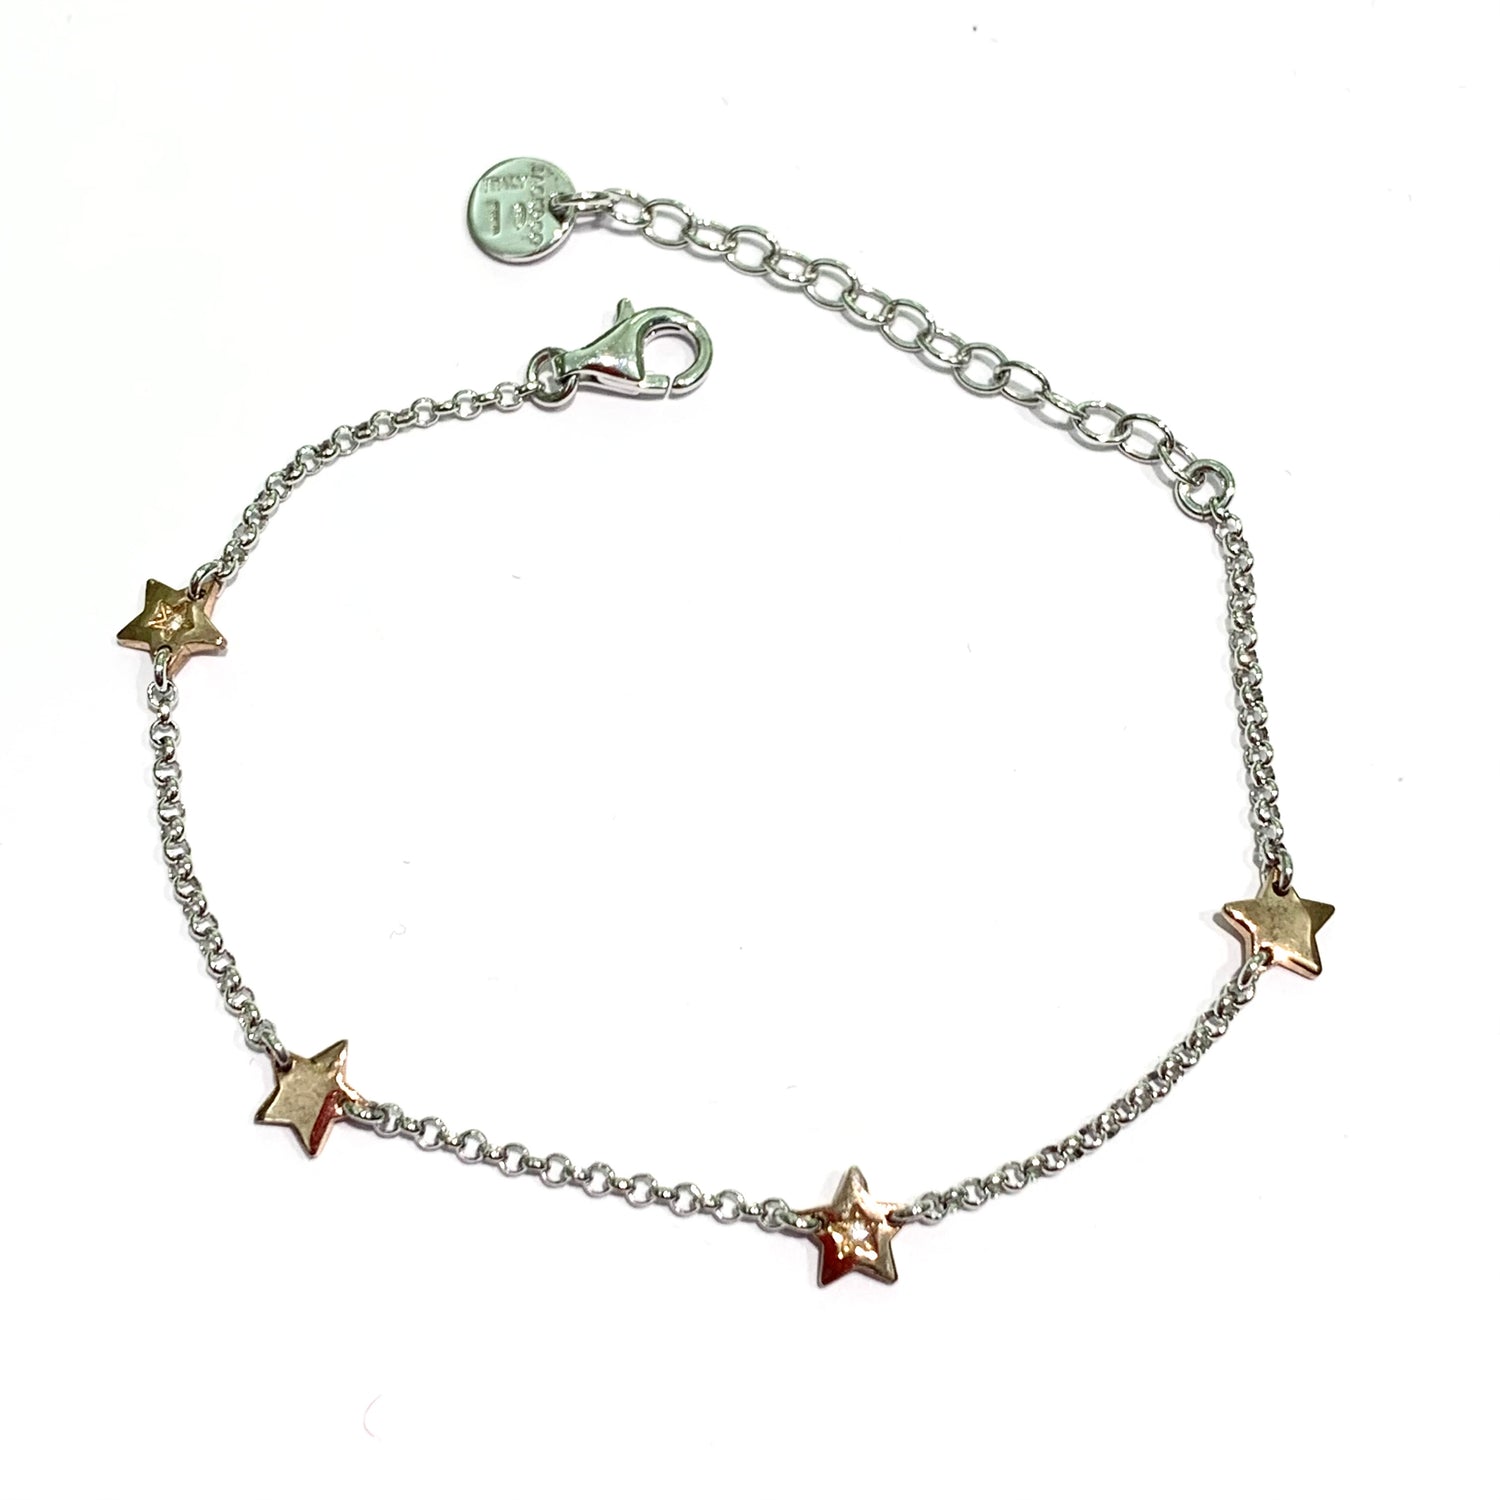 Bracciale in argento bicolore con quattro stelle in argento rosa di cui due impreziosite da un piccolo zircone.  Lunghezza regolabile da 15 cm a 18 cm.  Dimensioni stelle 0,5 cm.